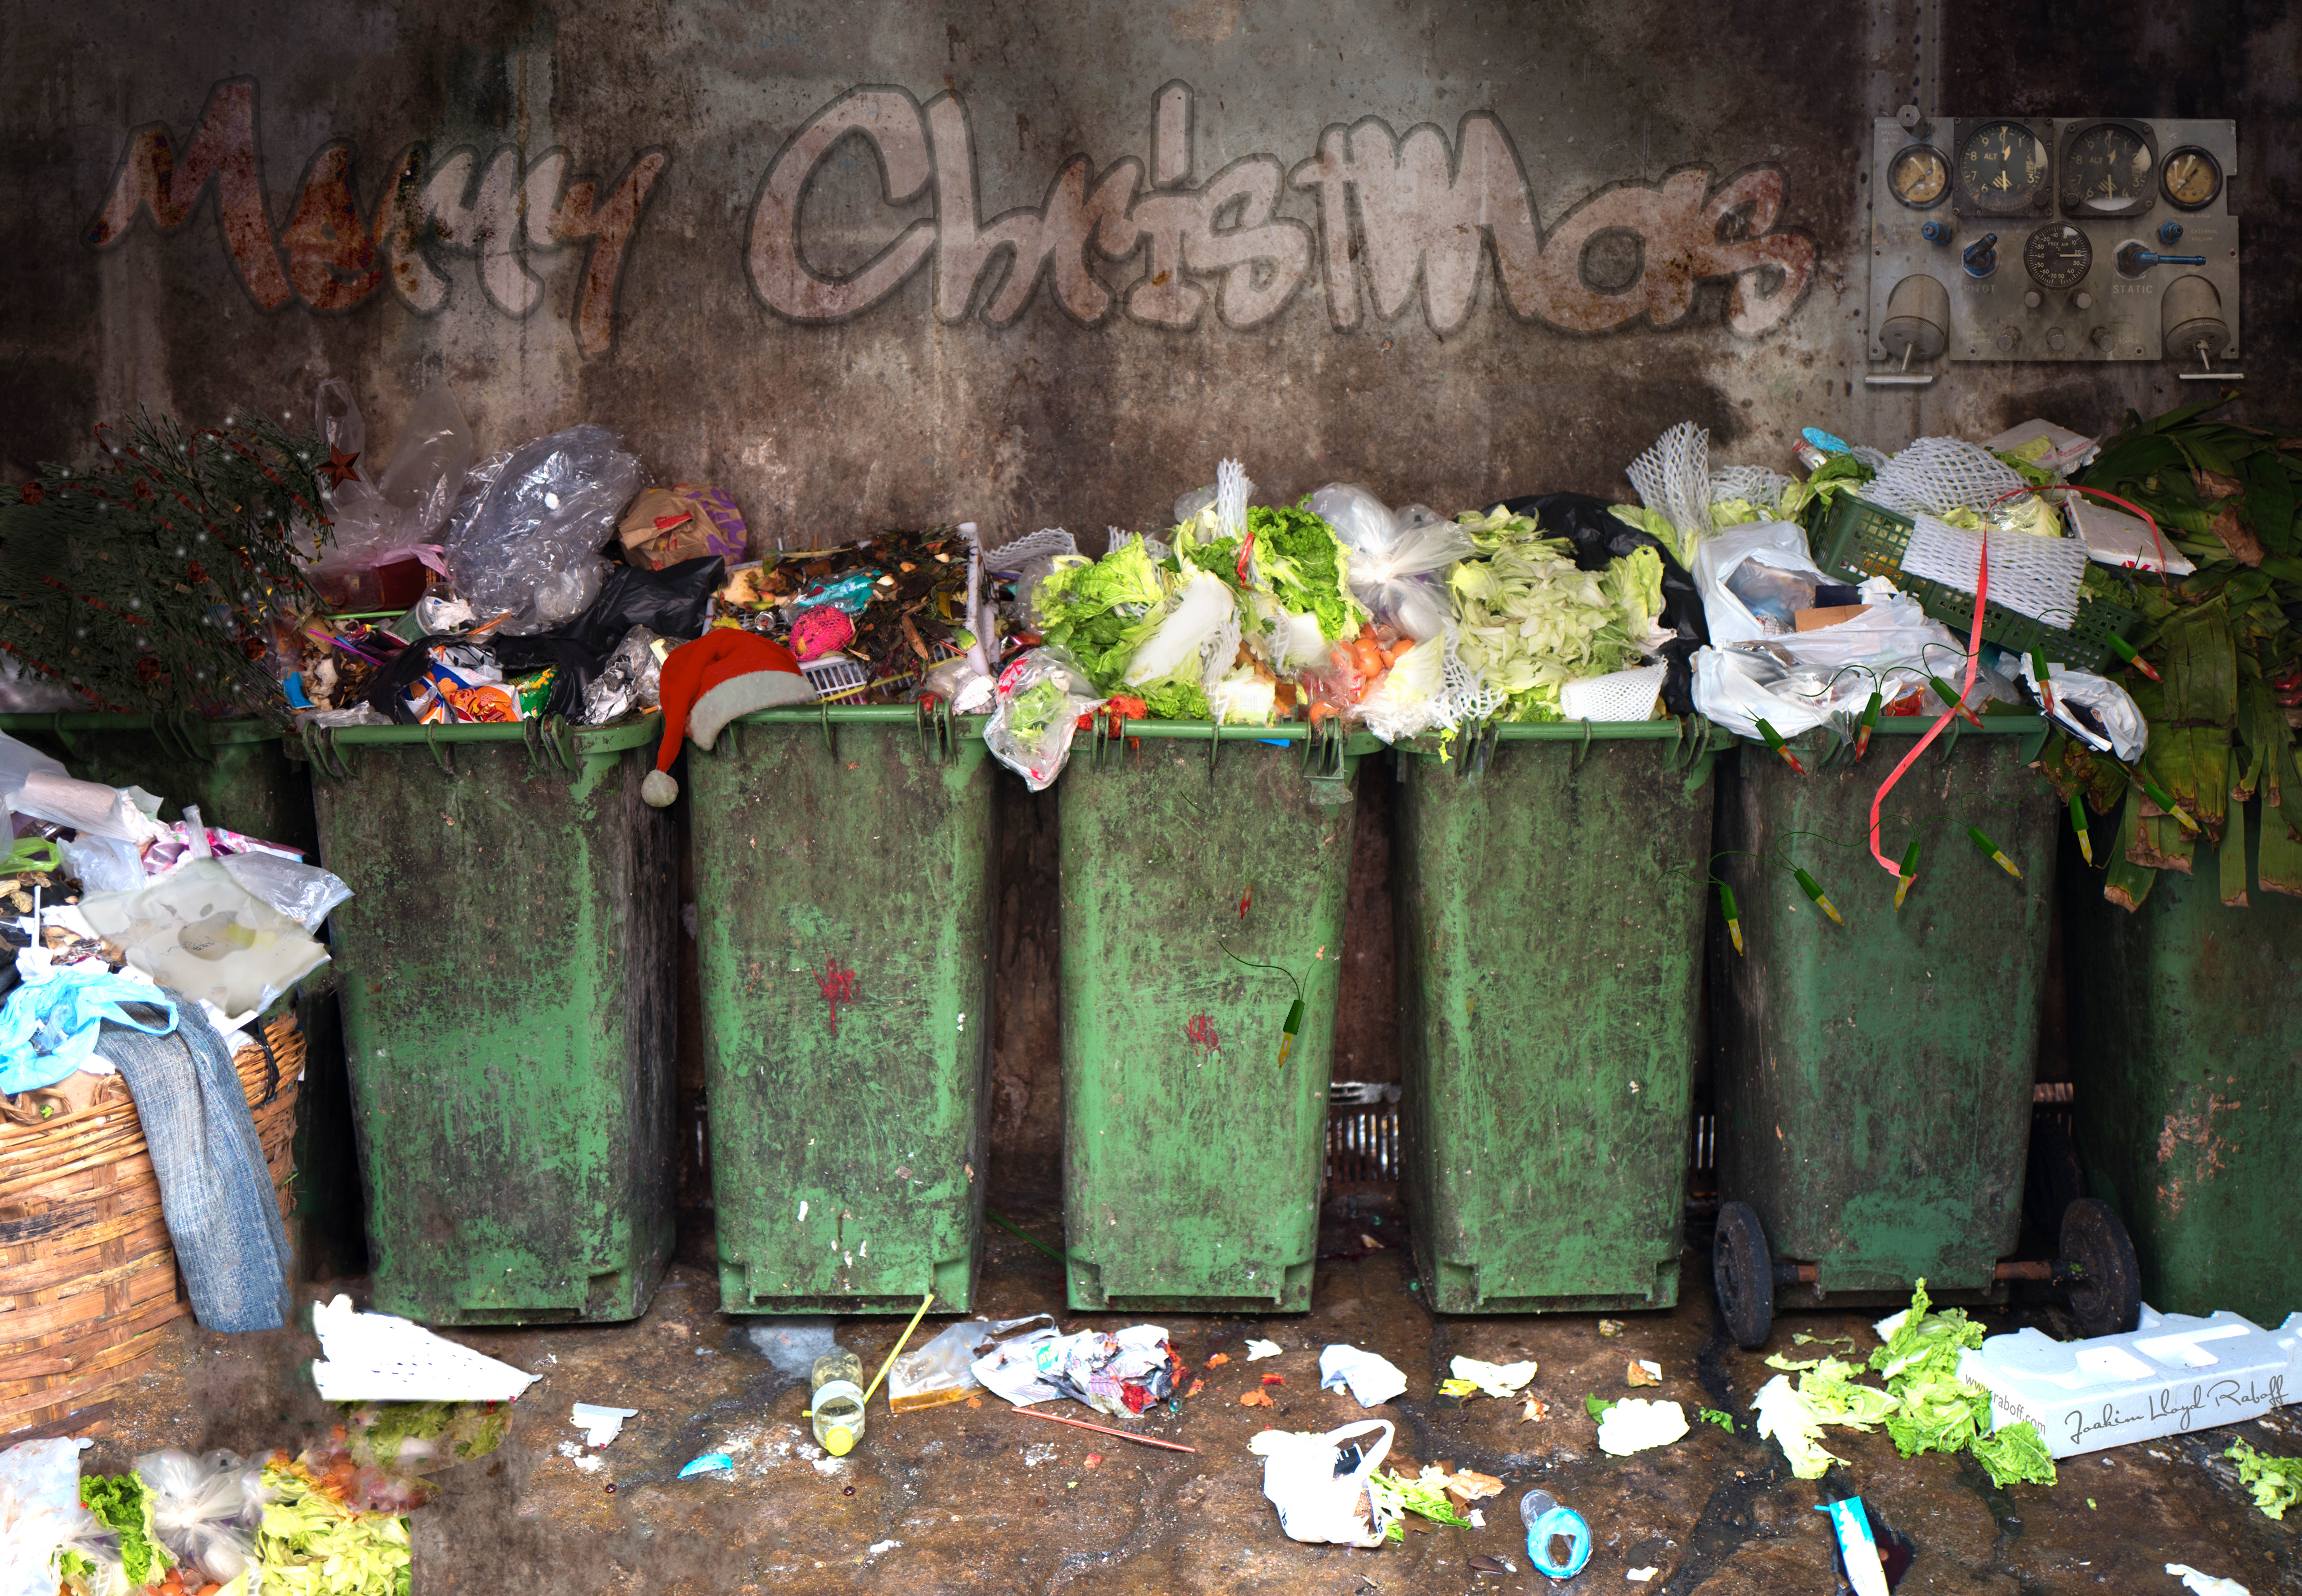 Vihreät jäteastiat pursuavat joulun ajan jätteitä inhottavasti. Seinässä lukee graffitein "merry christmas".